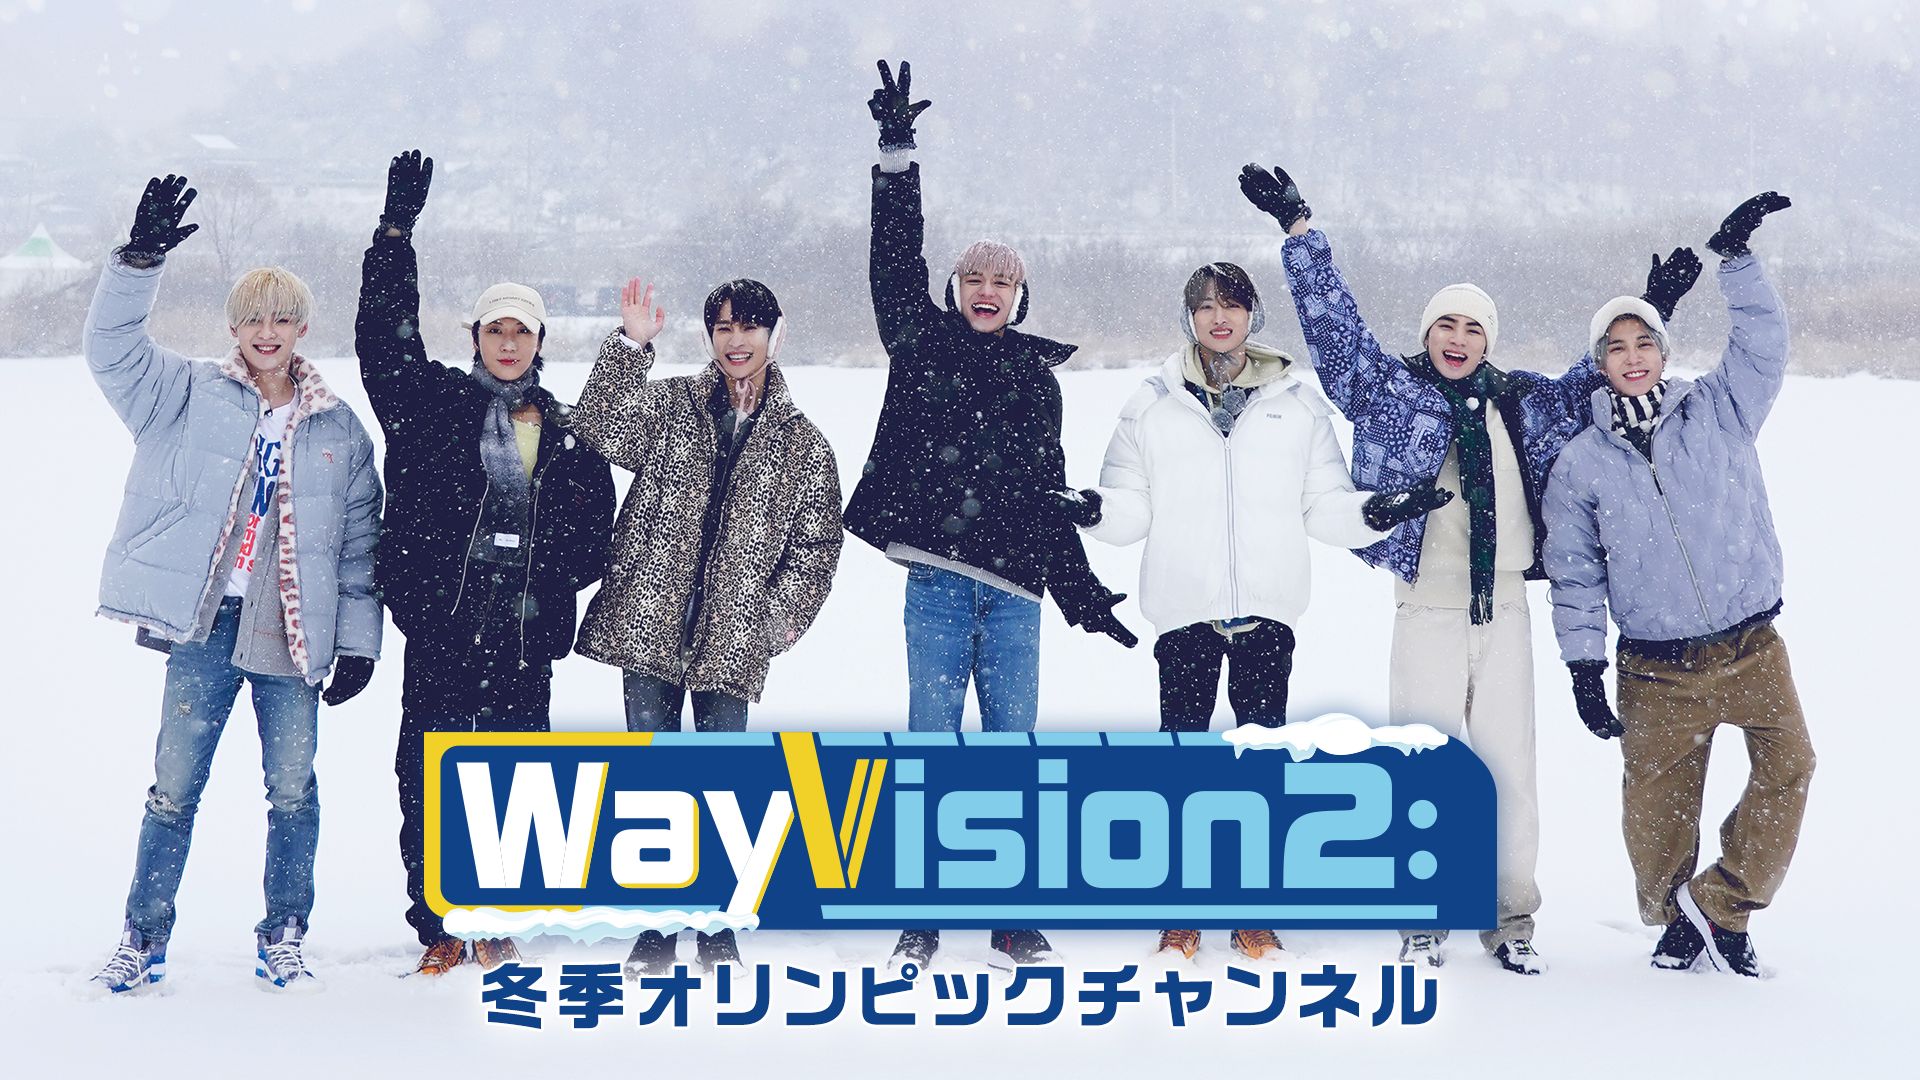 WayVision2:冬季オリンピックチャンネル